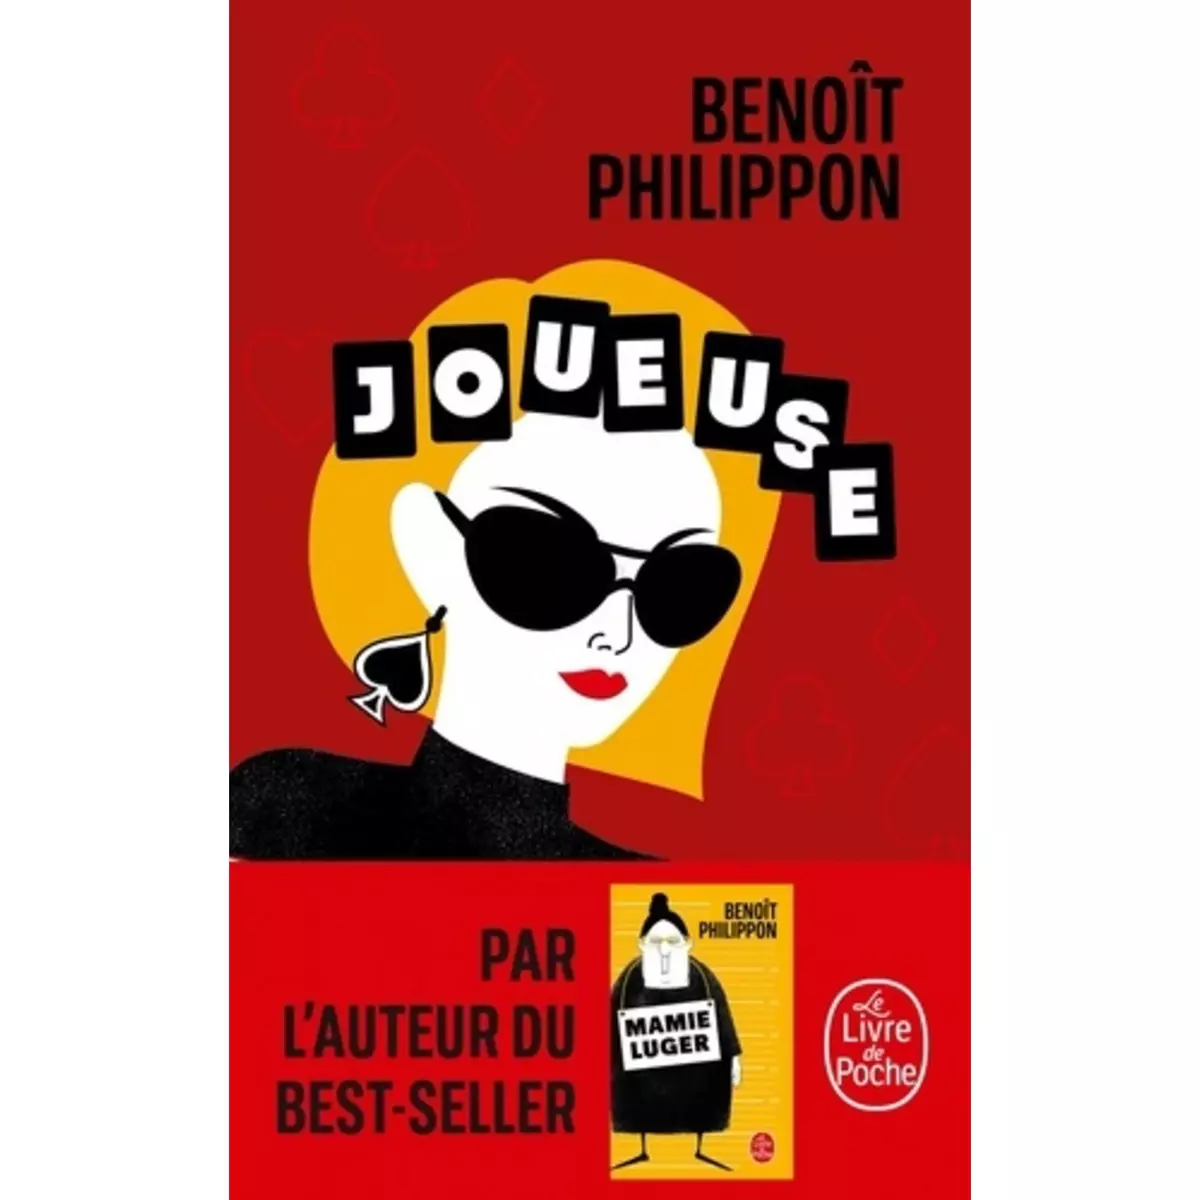  JOUEUSE, Philippon Benoît